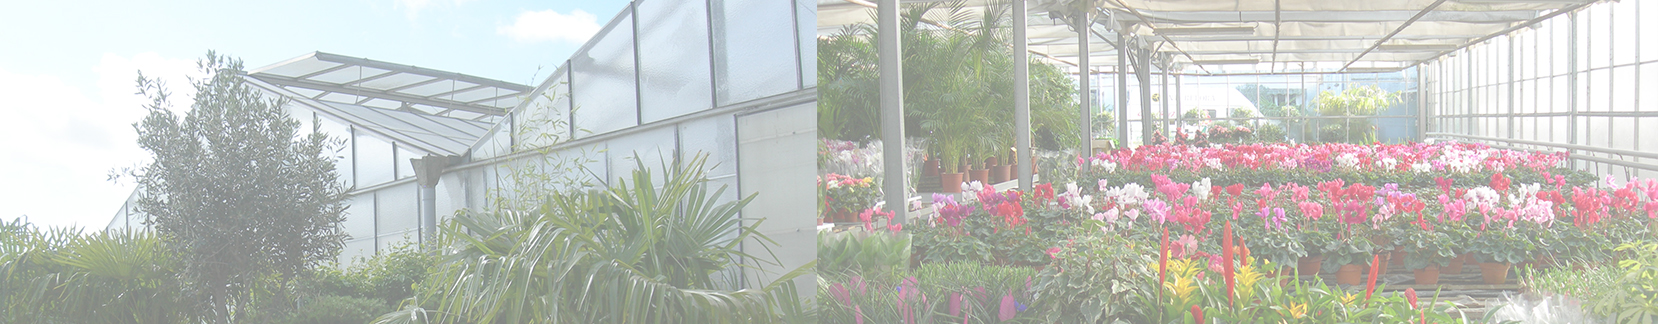 Jardinerie de centre ville fleurs veron